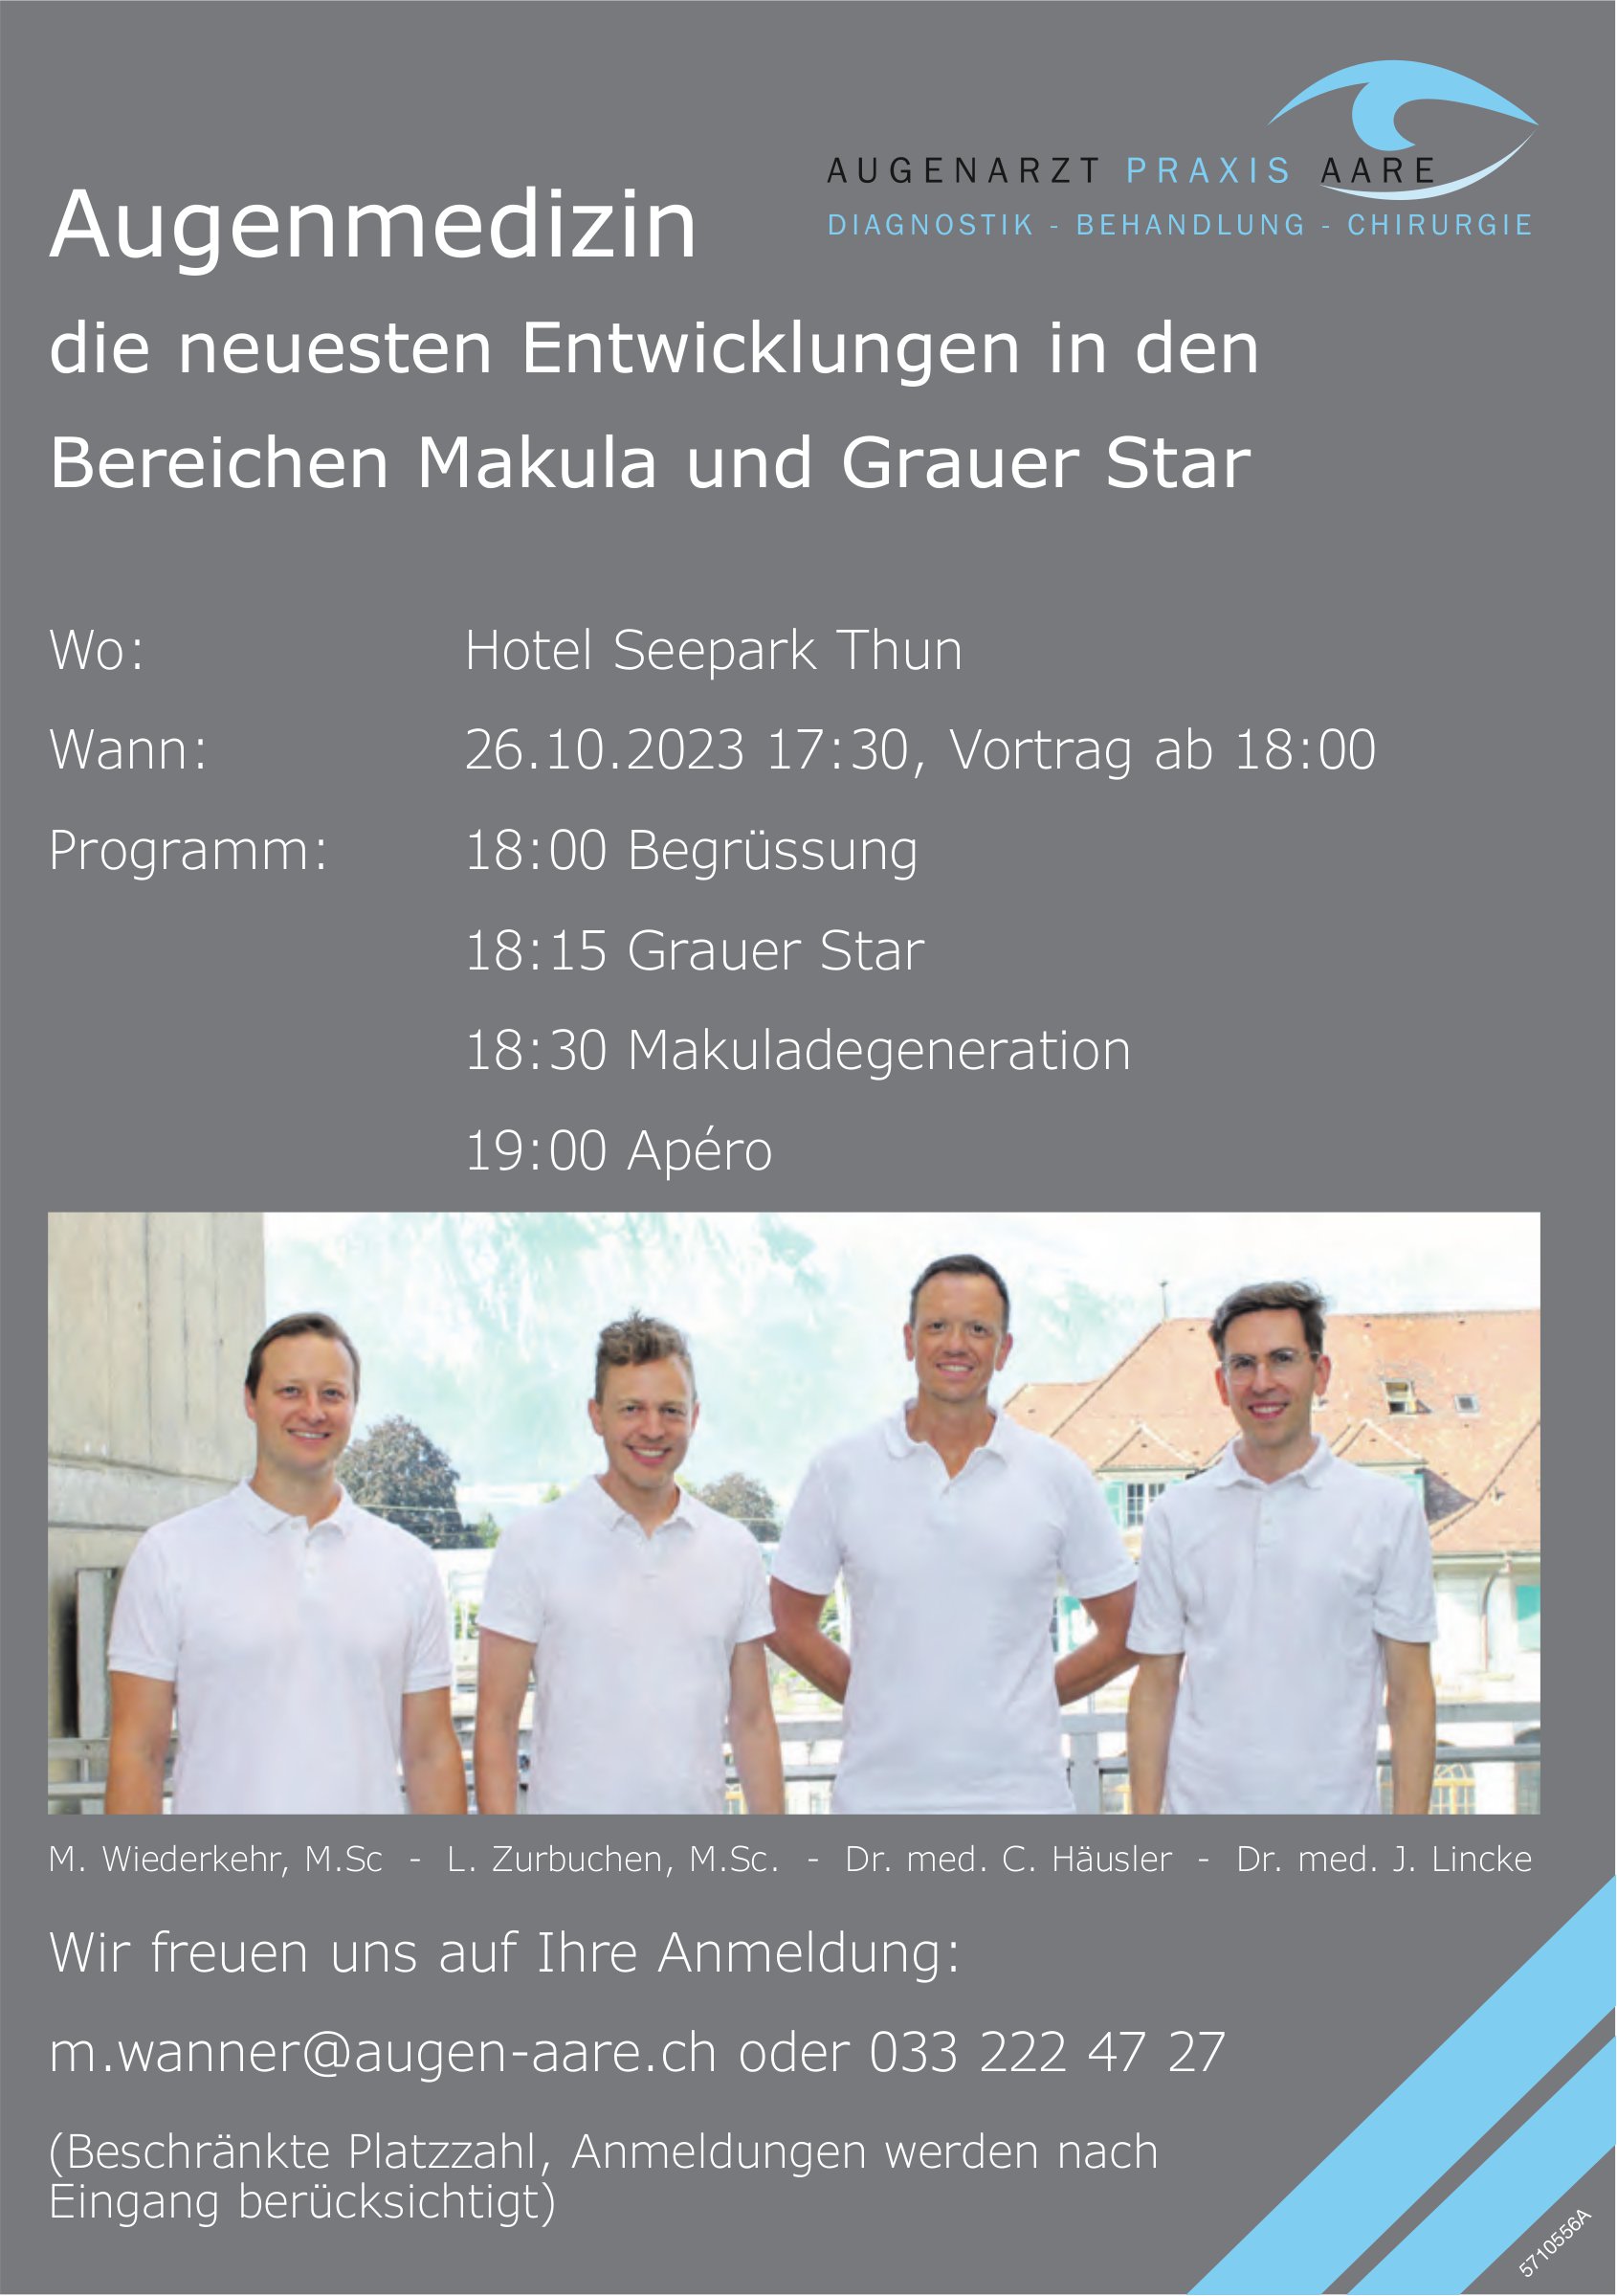 Augenmedizin die neuesten Entwicklungen in den Bereichen Makula und Grauer Star, 26. Oktober, Hotel Seepark, Thun